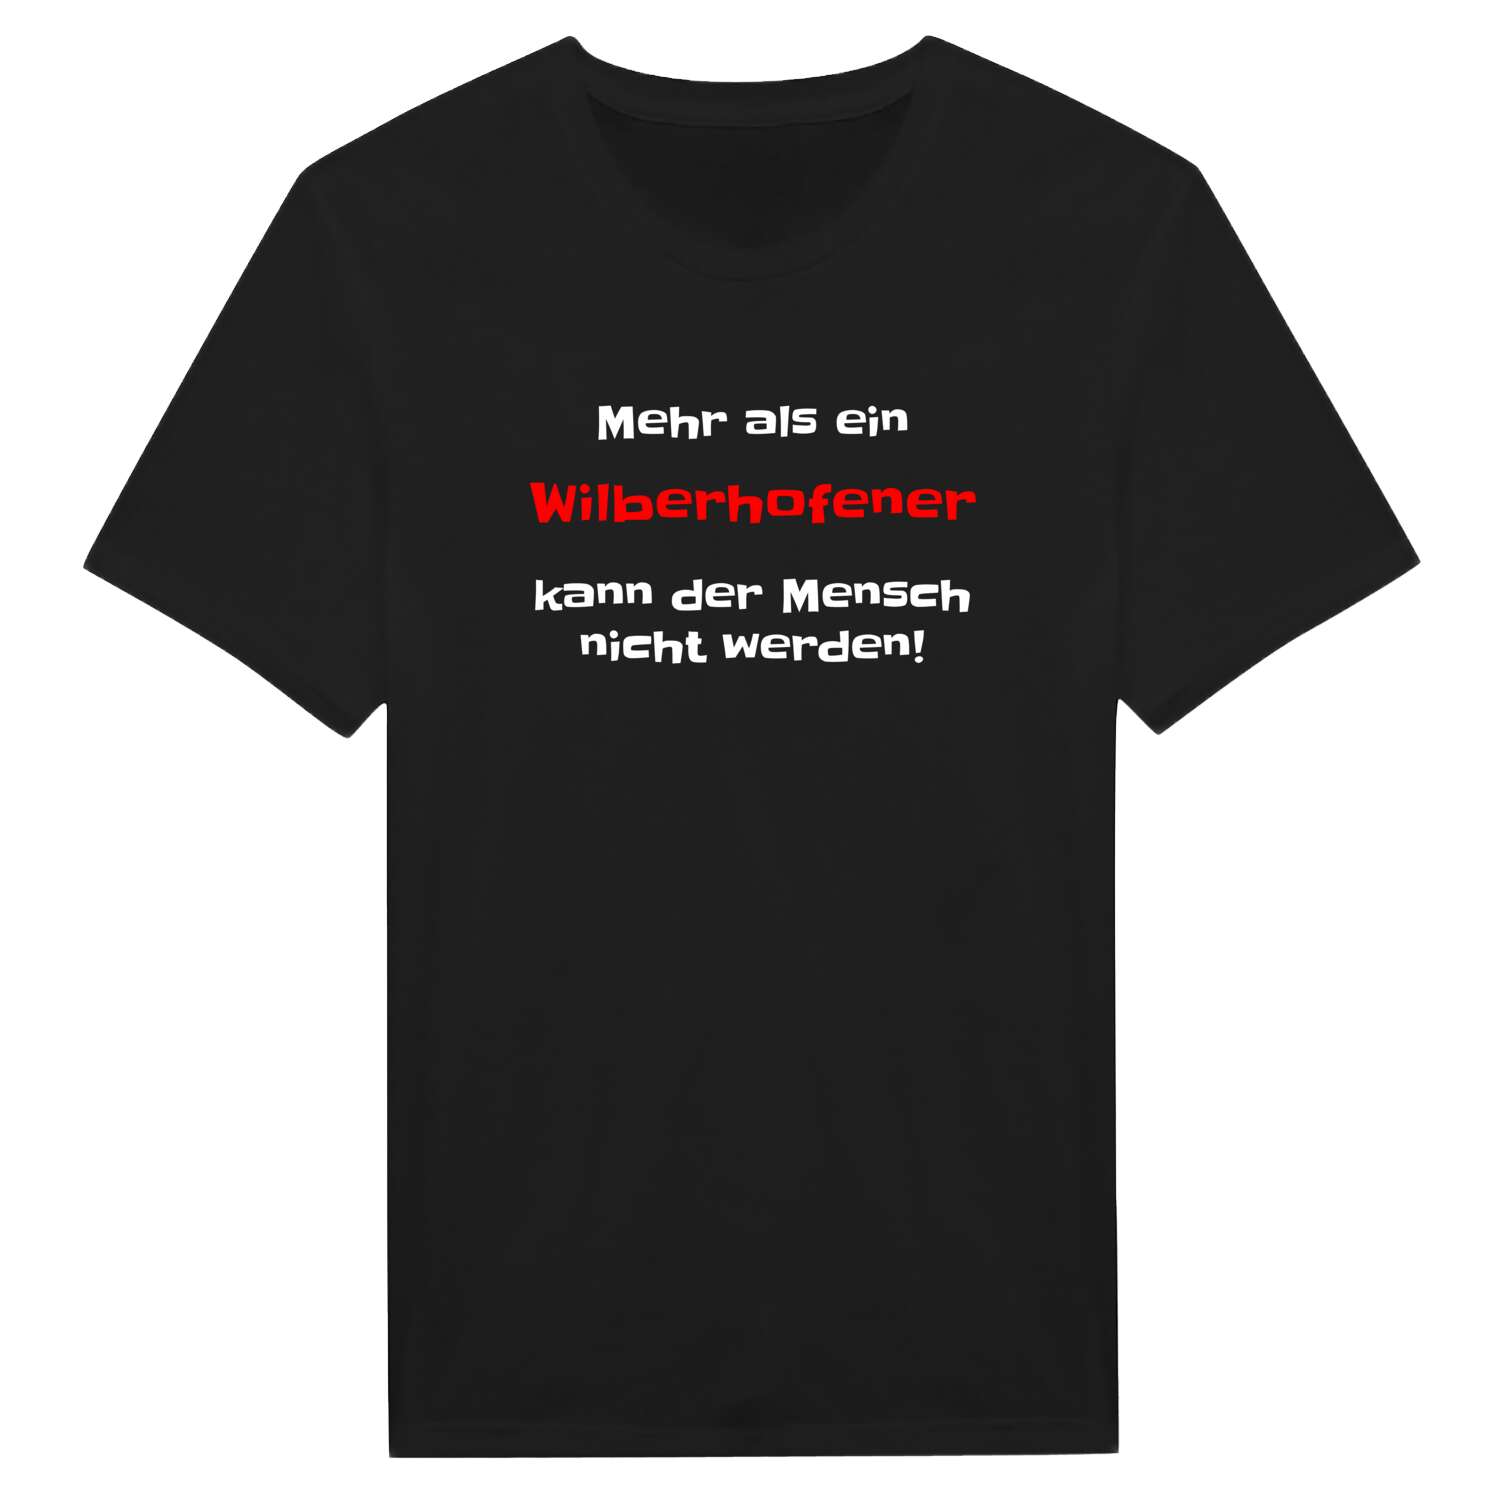 Wilberhofen T-Shirt »Mehr als ein«